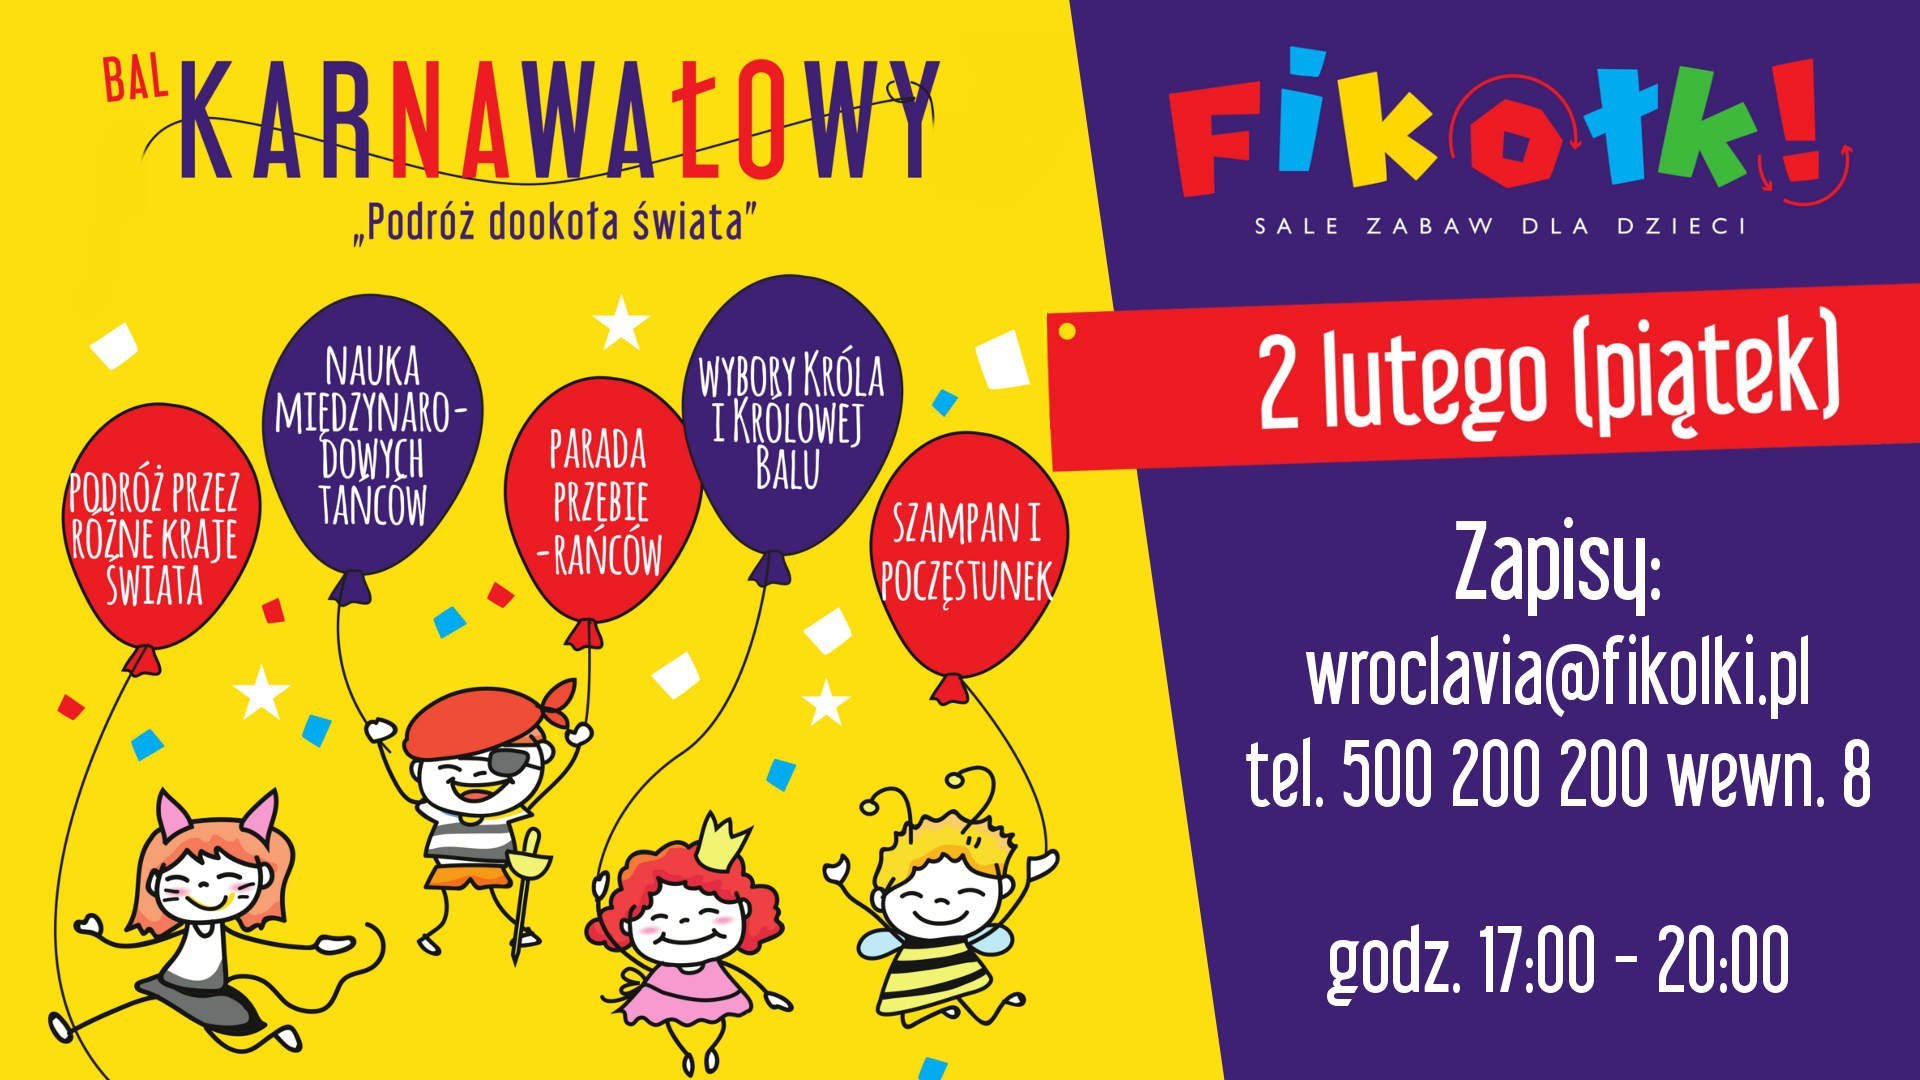 karnawał atrakcje dla dzieci bal dla dzieci Warszawa 2018